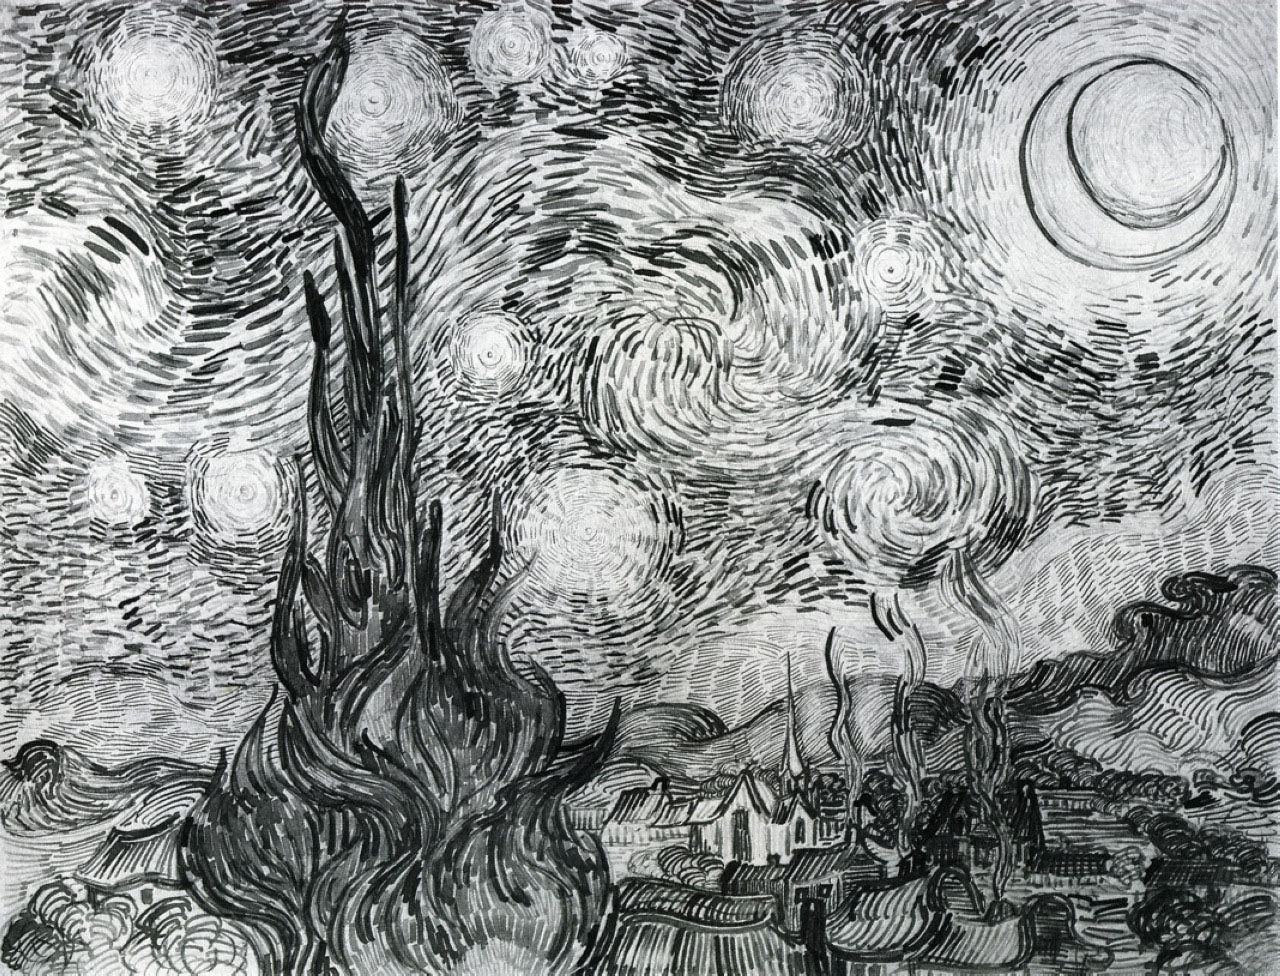 Винсент Ван Гог. "Звёздная ночь". 1889.